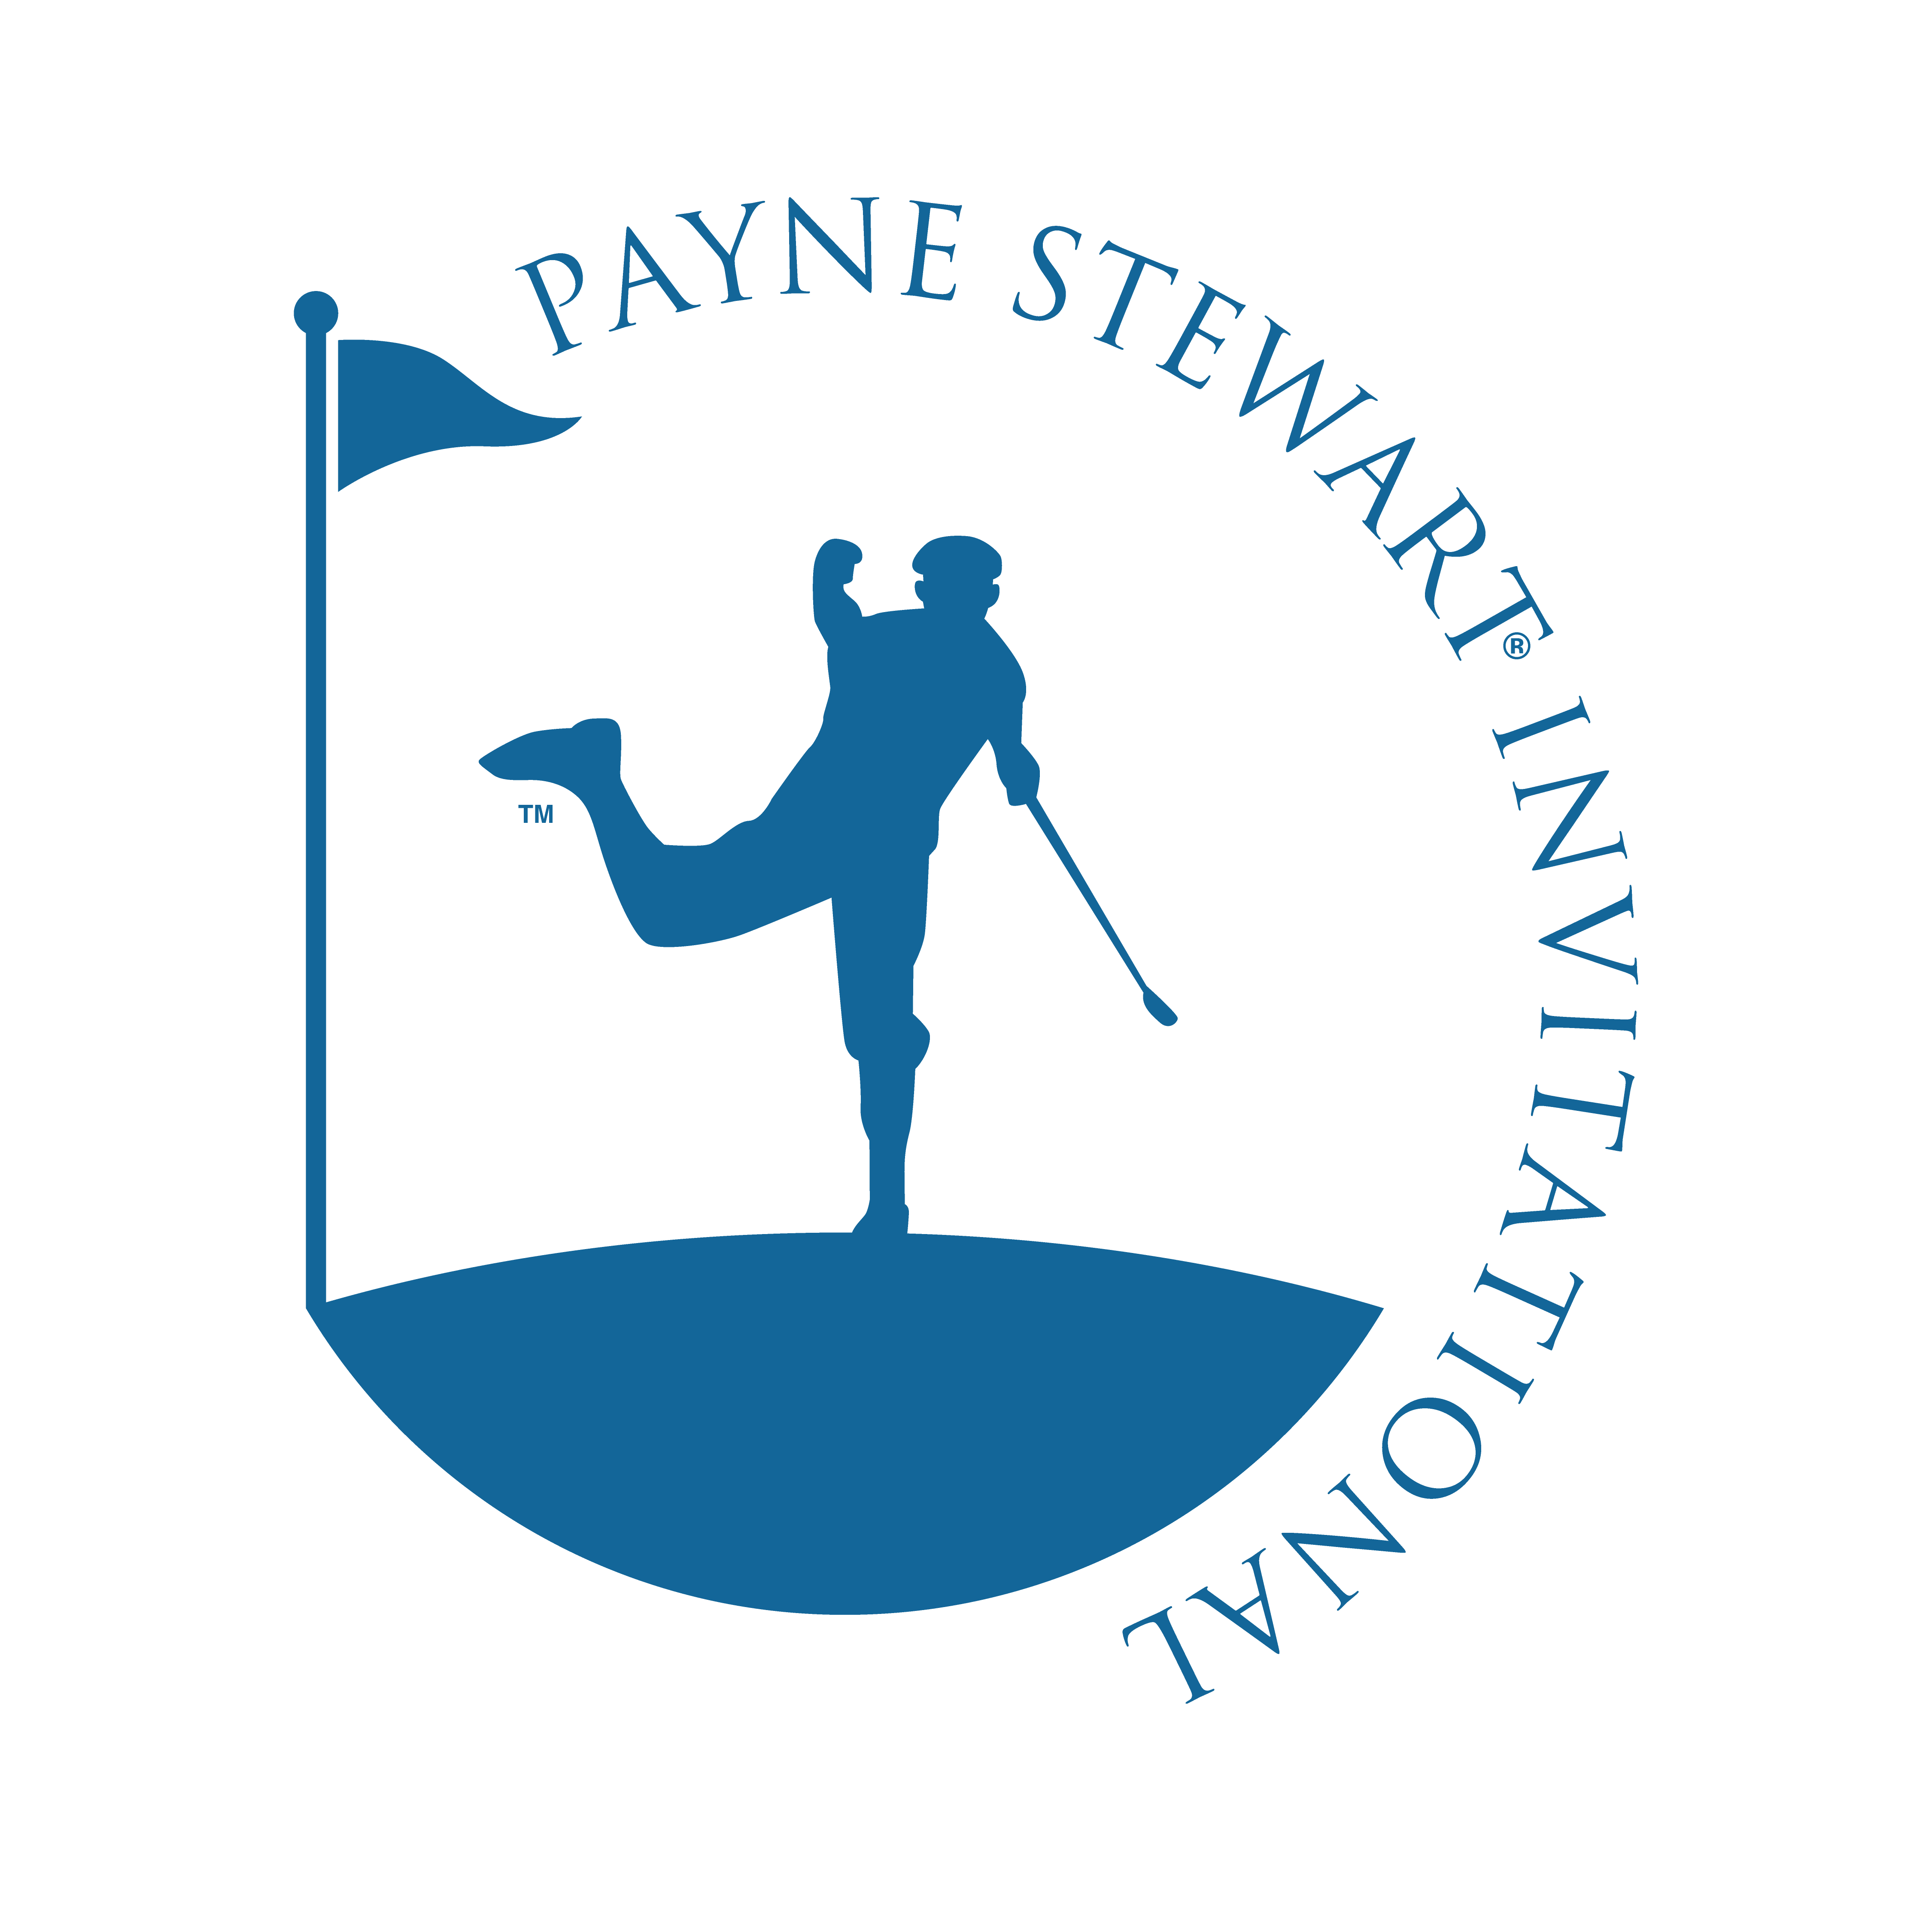 Payne Stewart Invitational